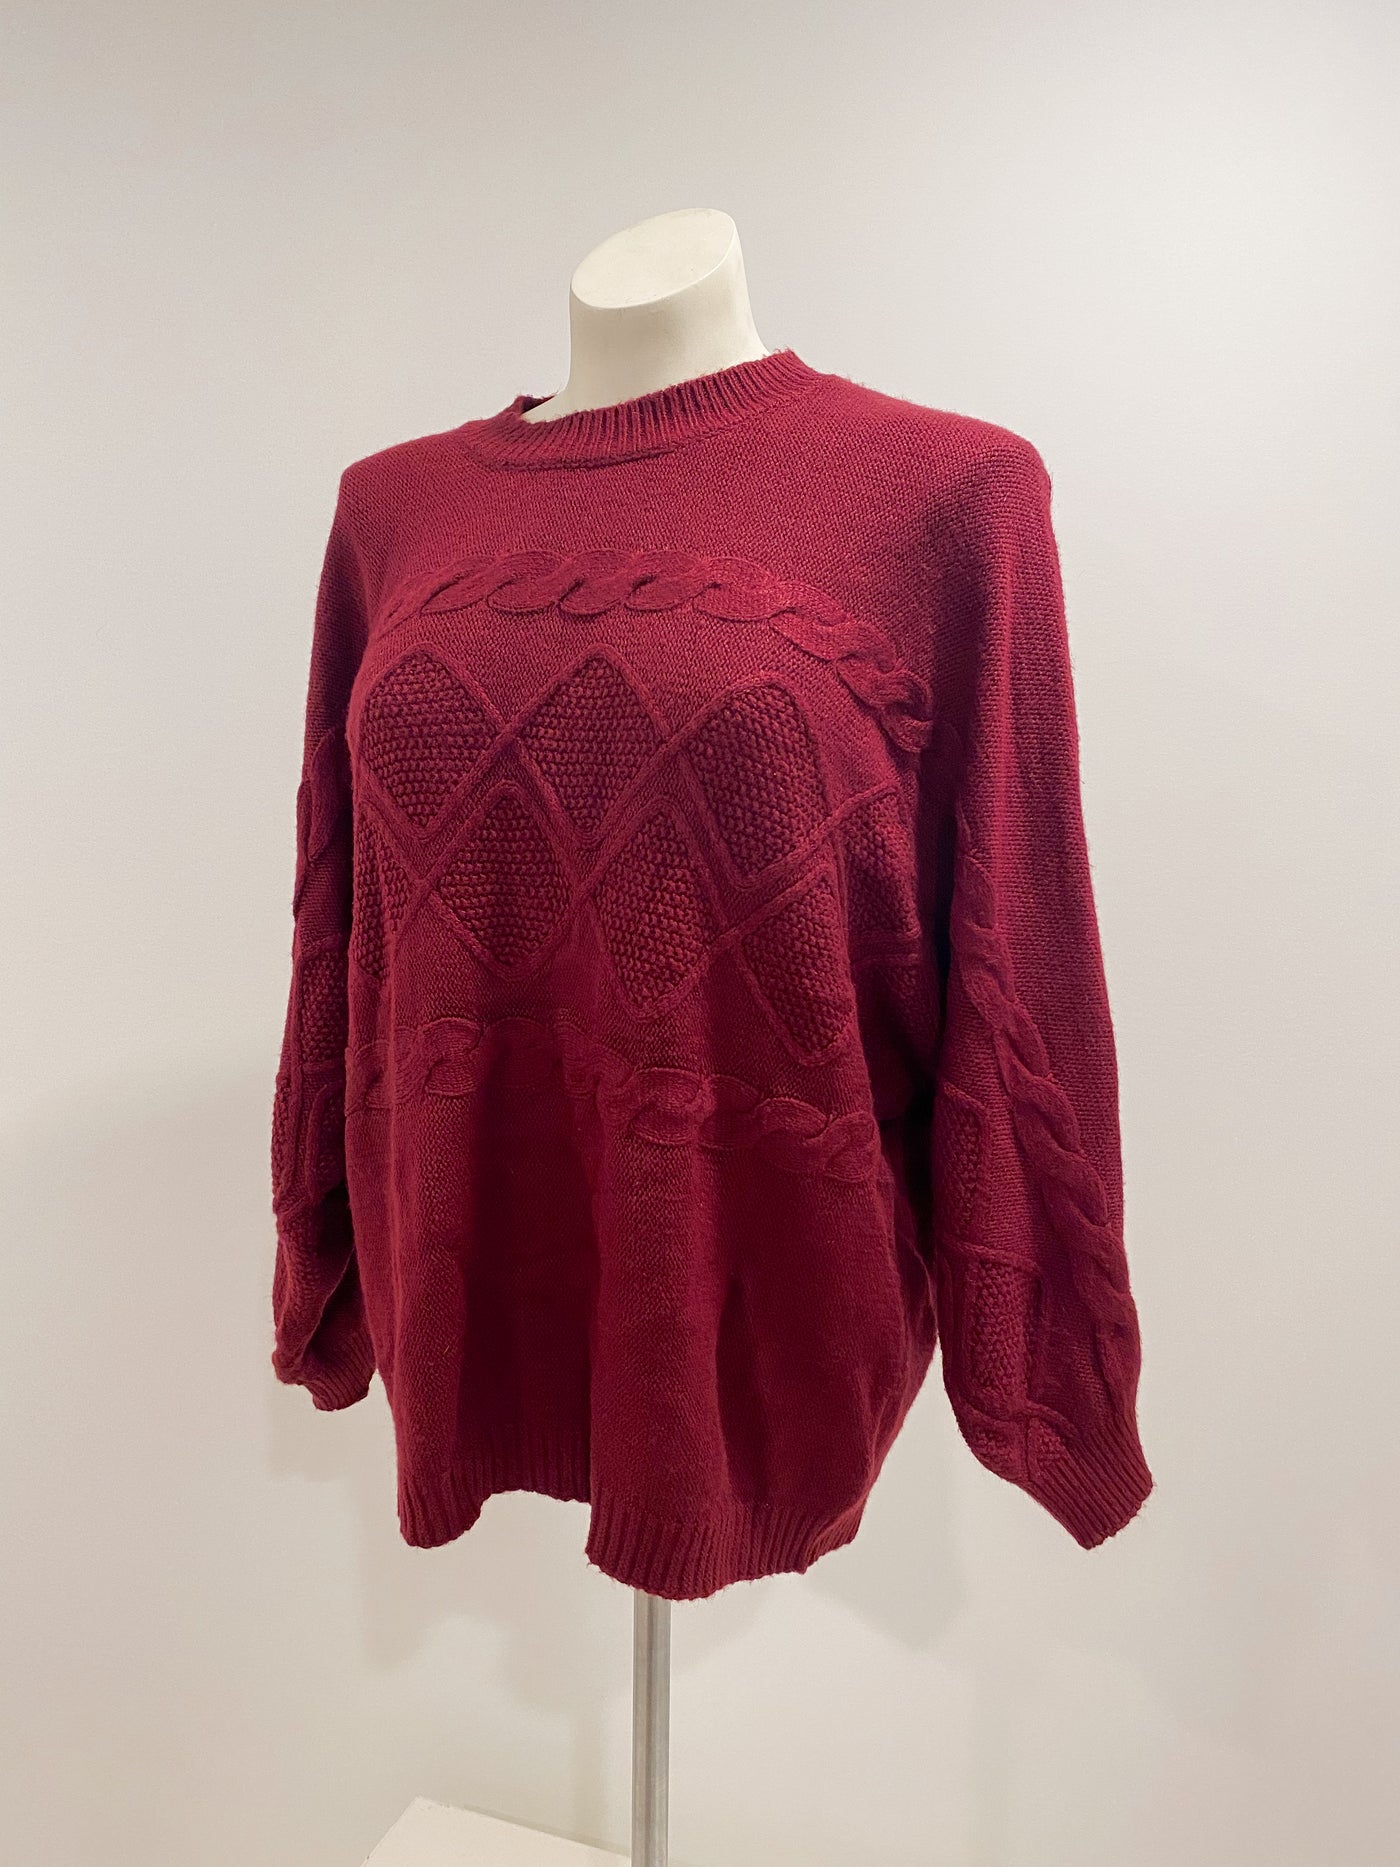 Merlot Knit Pullover